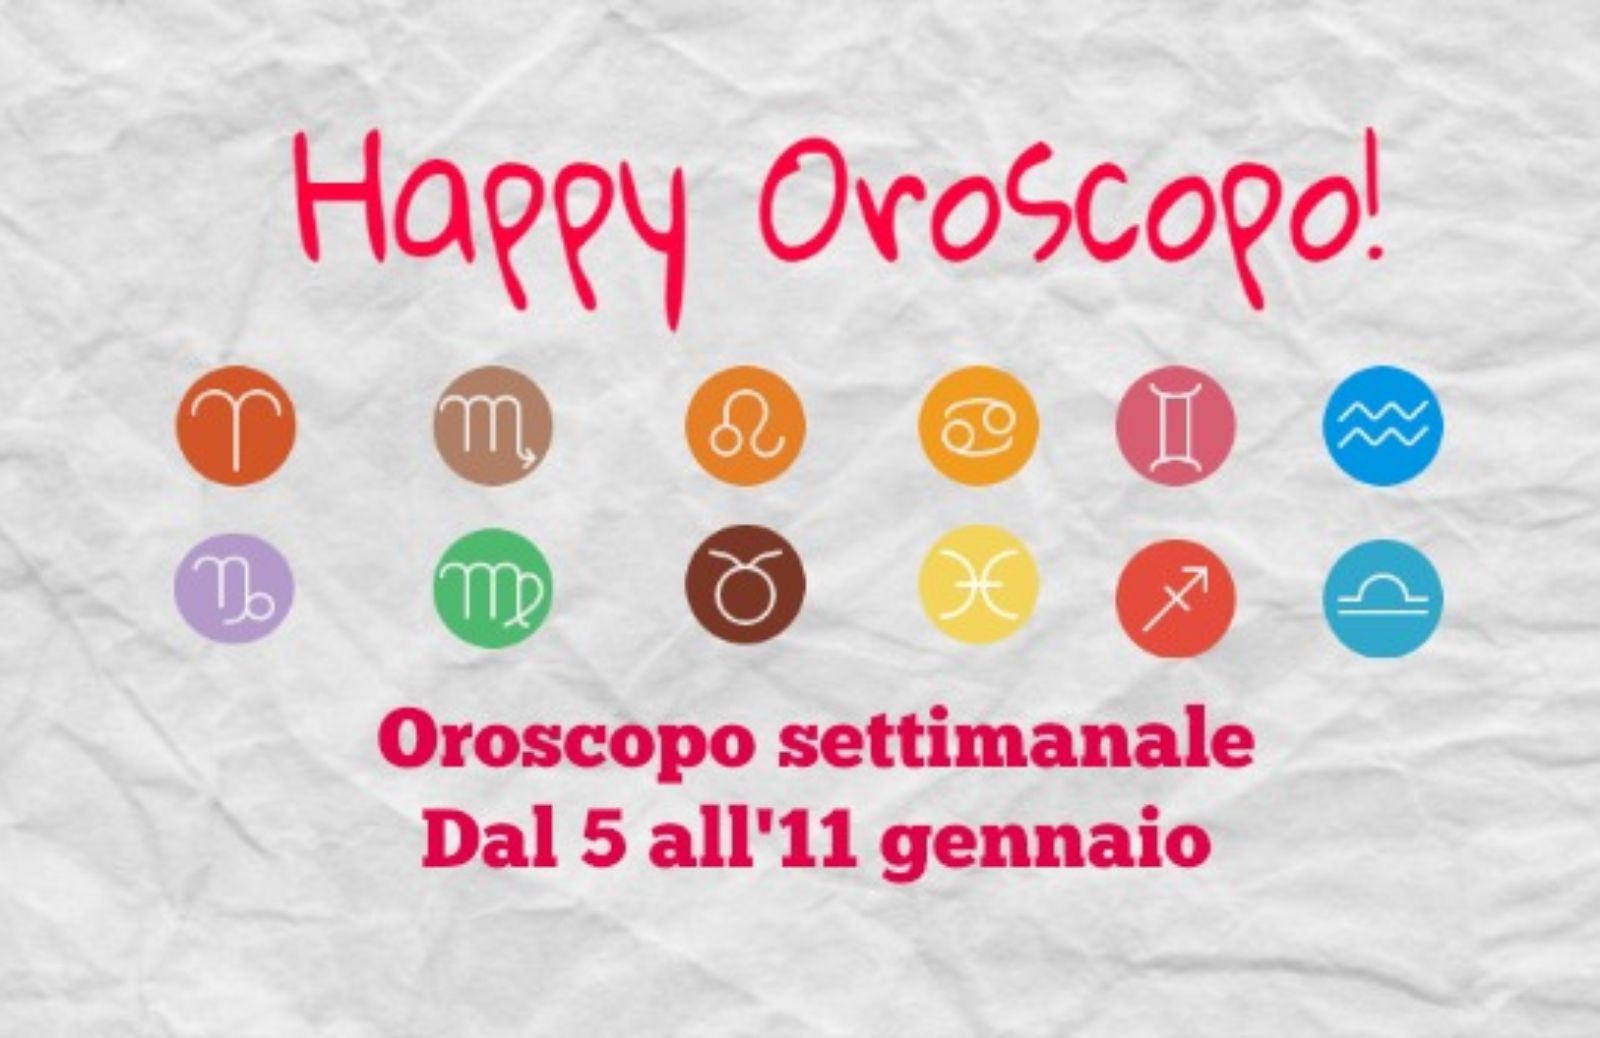 Happy Oroscopo della settimana: cosa dicono le stelle dal 5 all'11 gennaio segno per segno